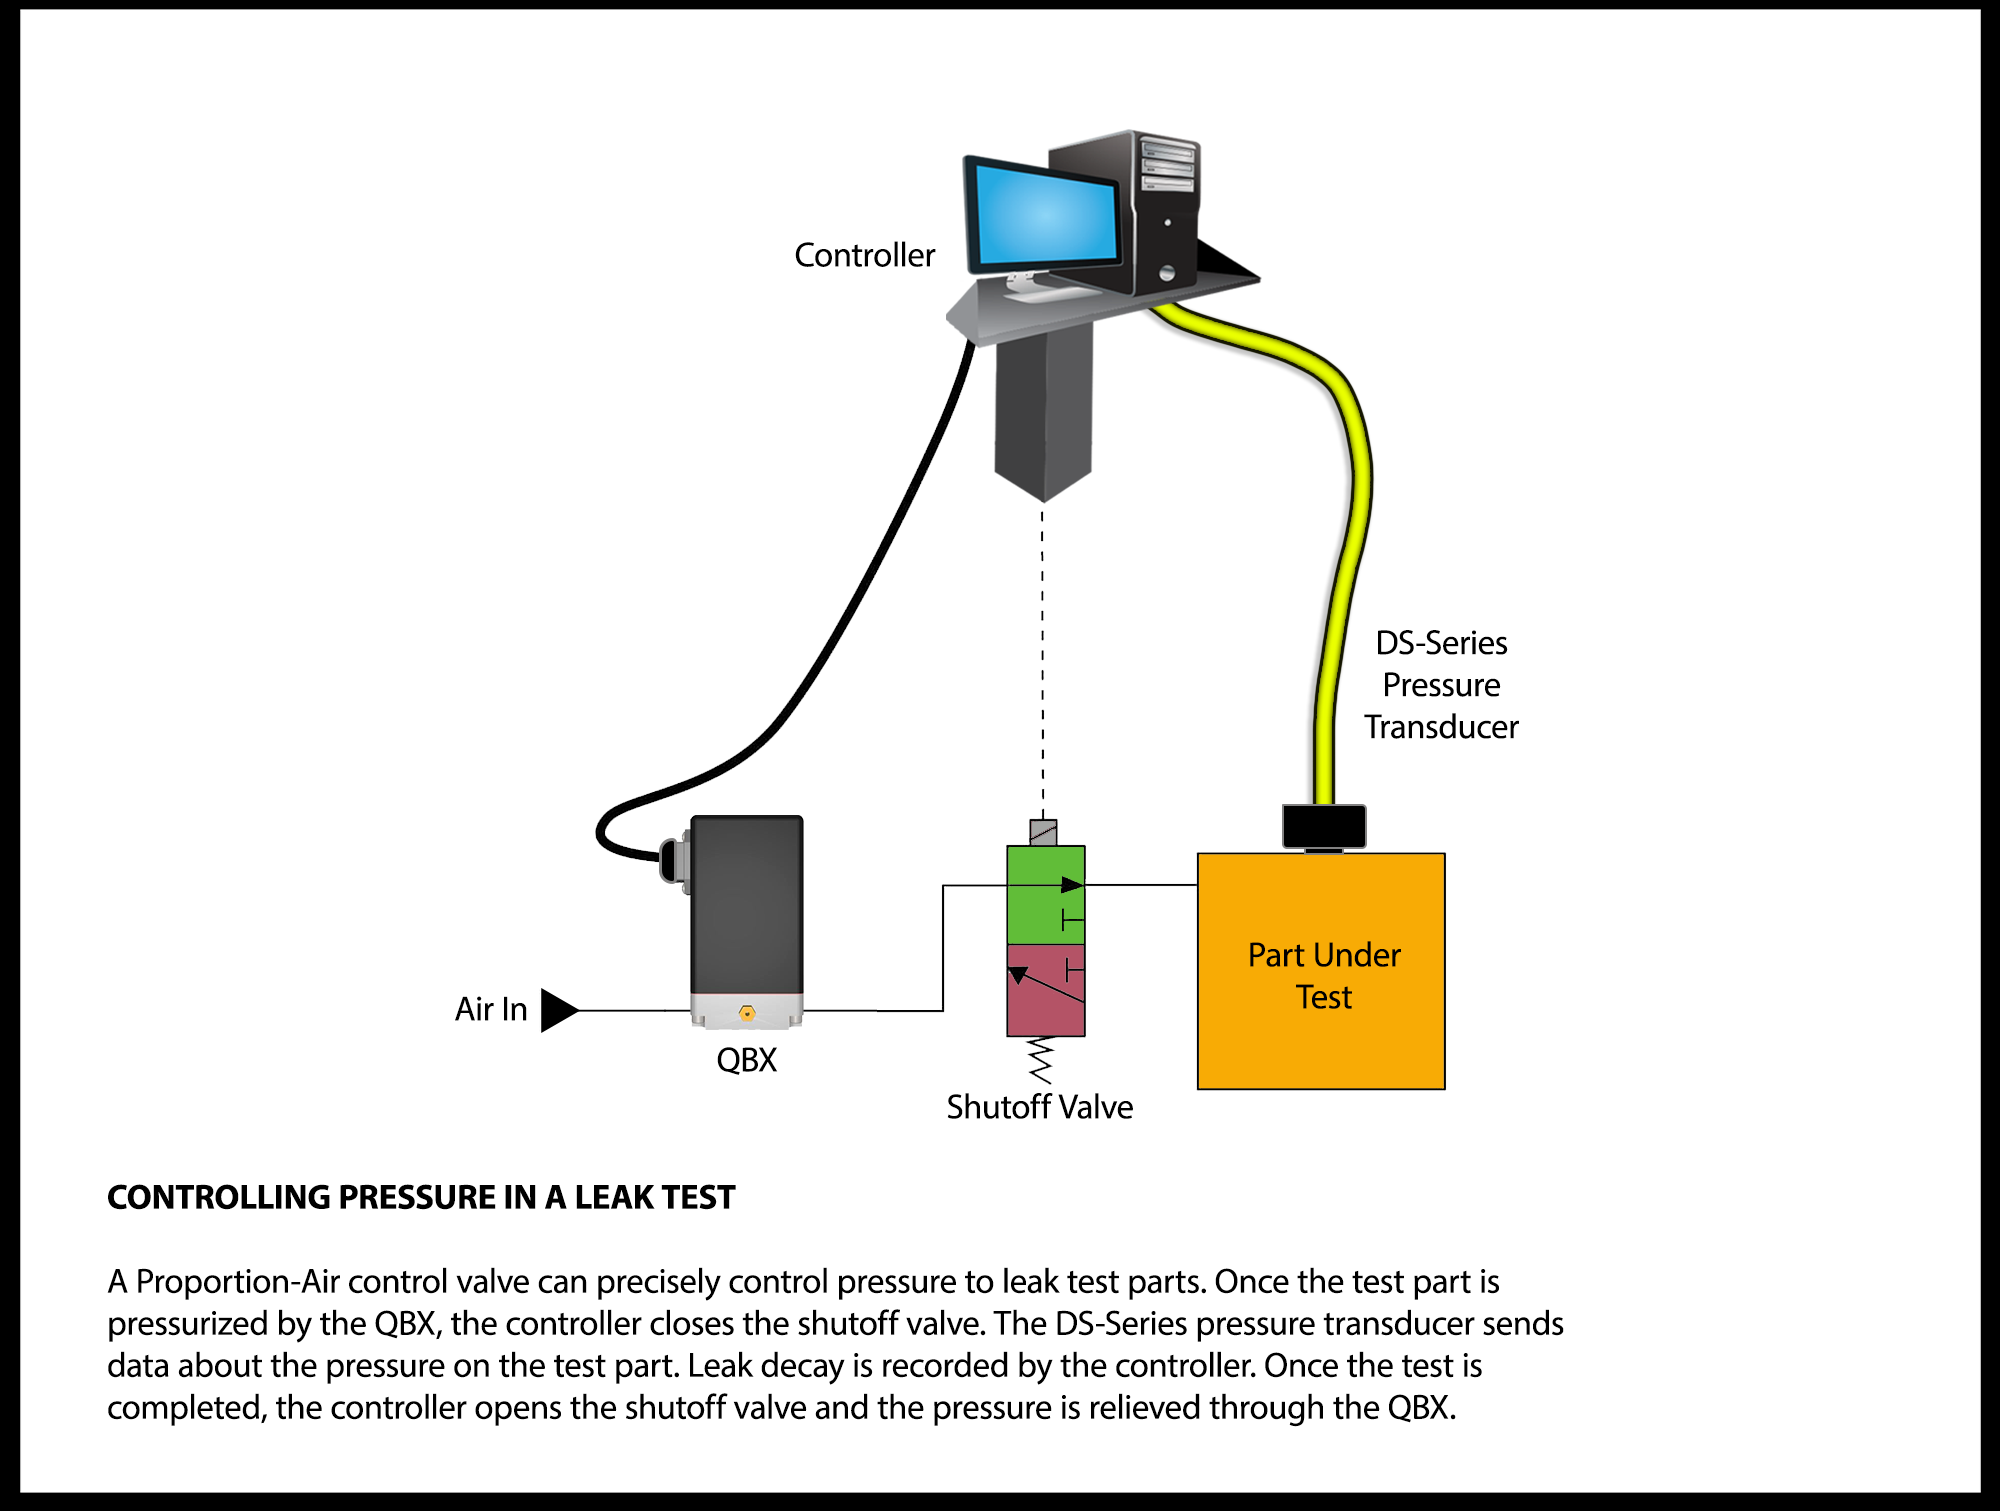 Controlling Pressure in a Leak Test